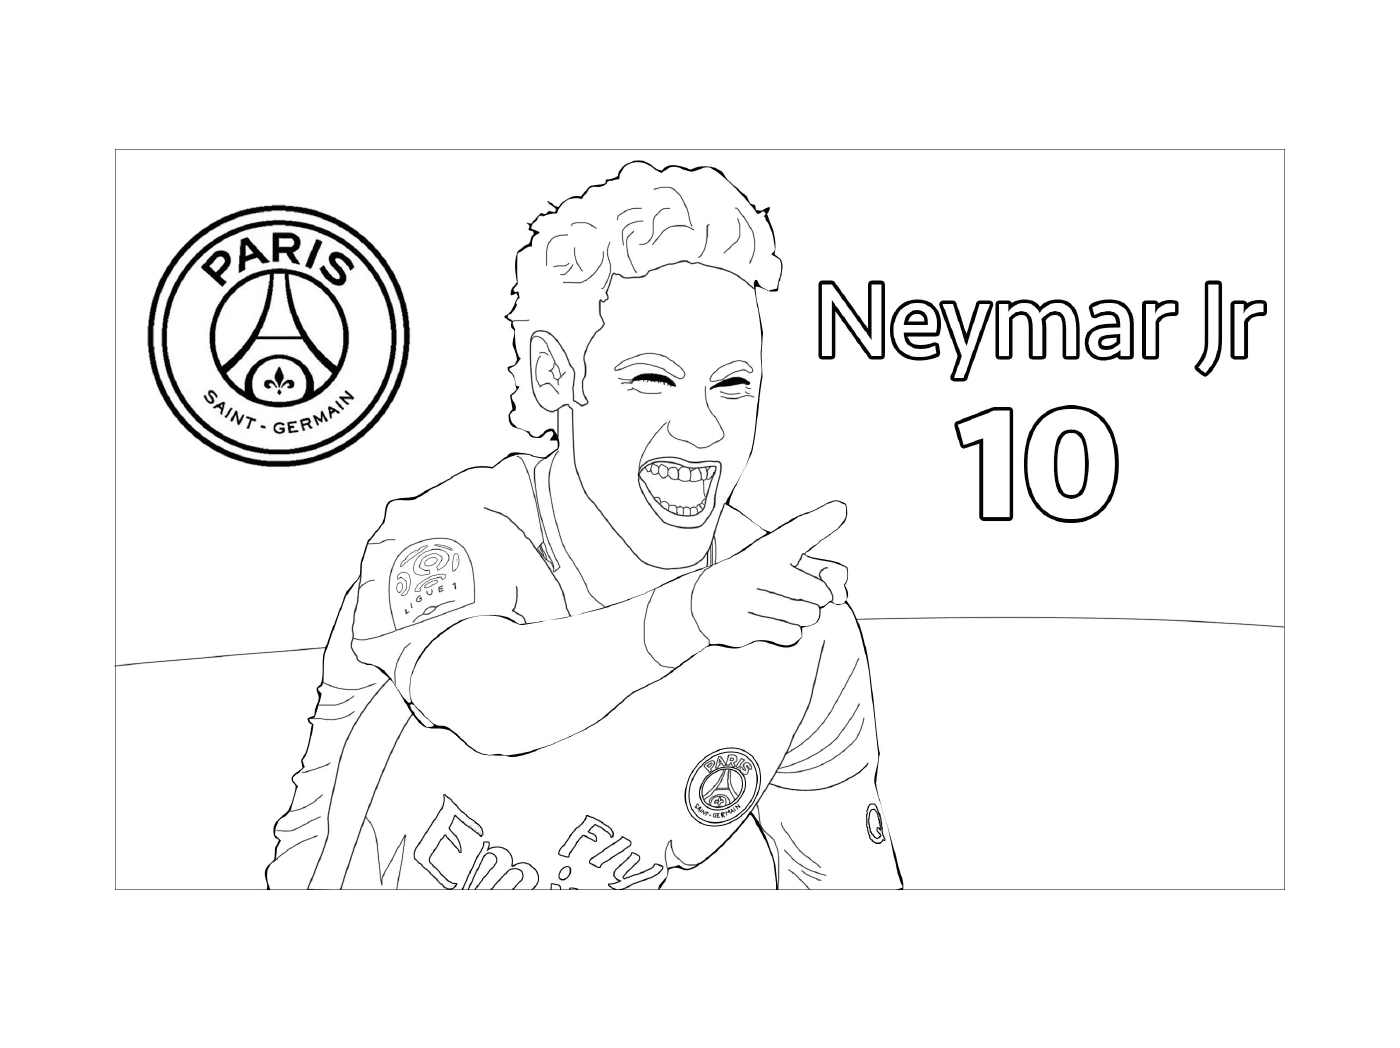  Neymar Jr, PSG-Footballspieler 